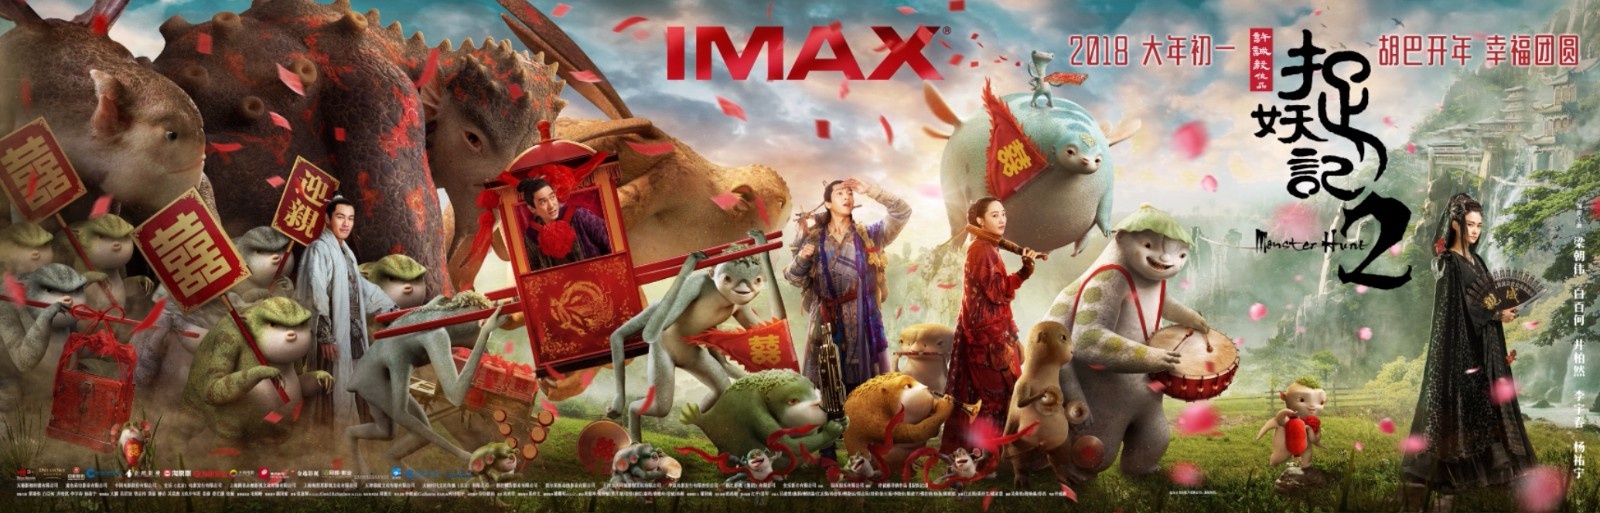 《捉妖记2》将于2月16大年初一登陆全国IMAX影院